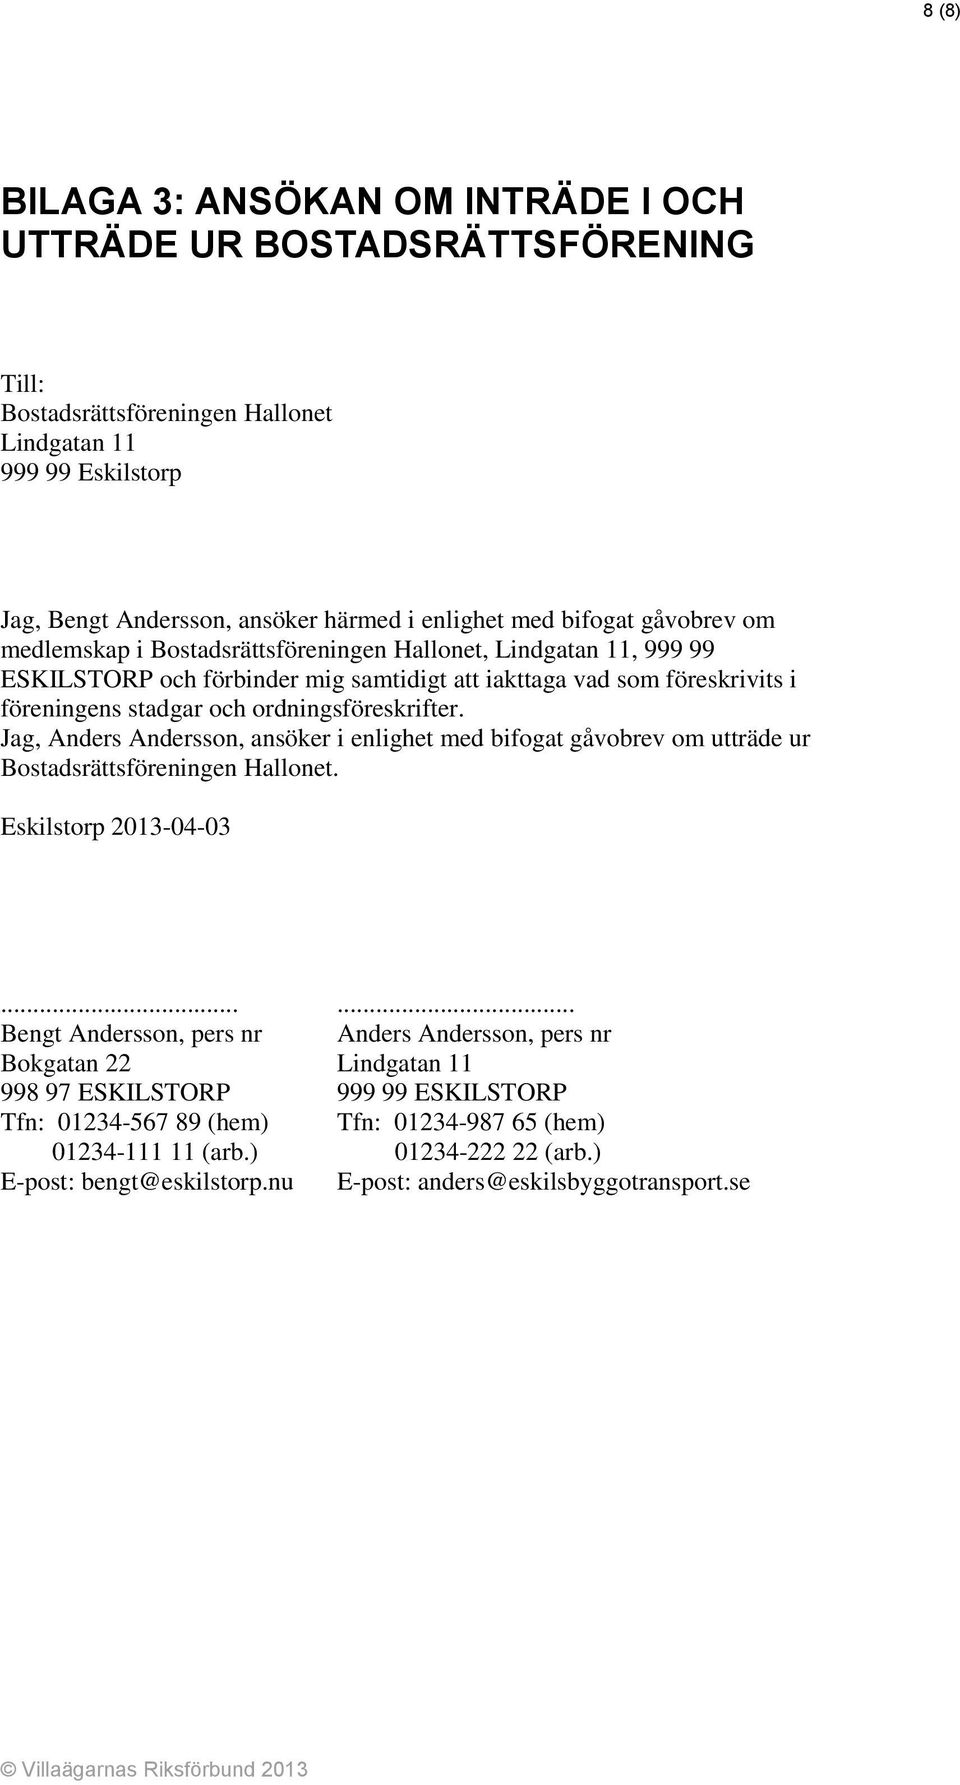 ordningsföreskrifter. Jag, Anders Andersson, ansöker i enlighet med bifogat gåvobrev om utträde ur Bostadsrättsföreningen Hallonet. Eskilstorp 2013-04-03.